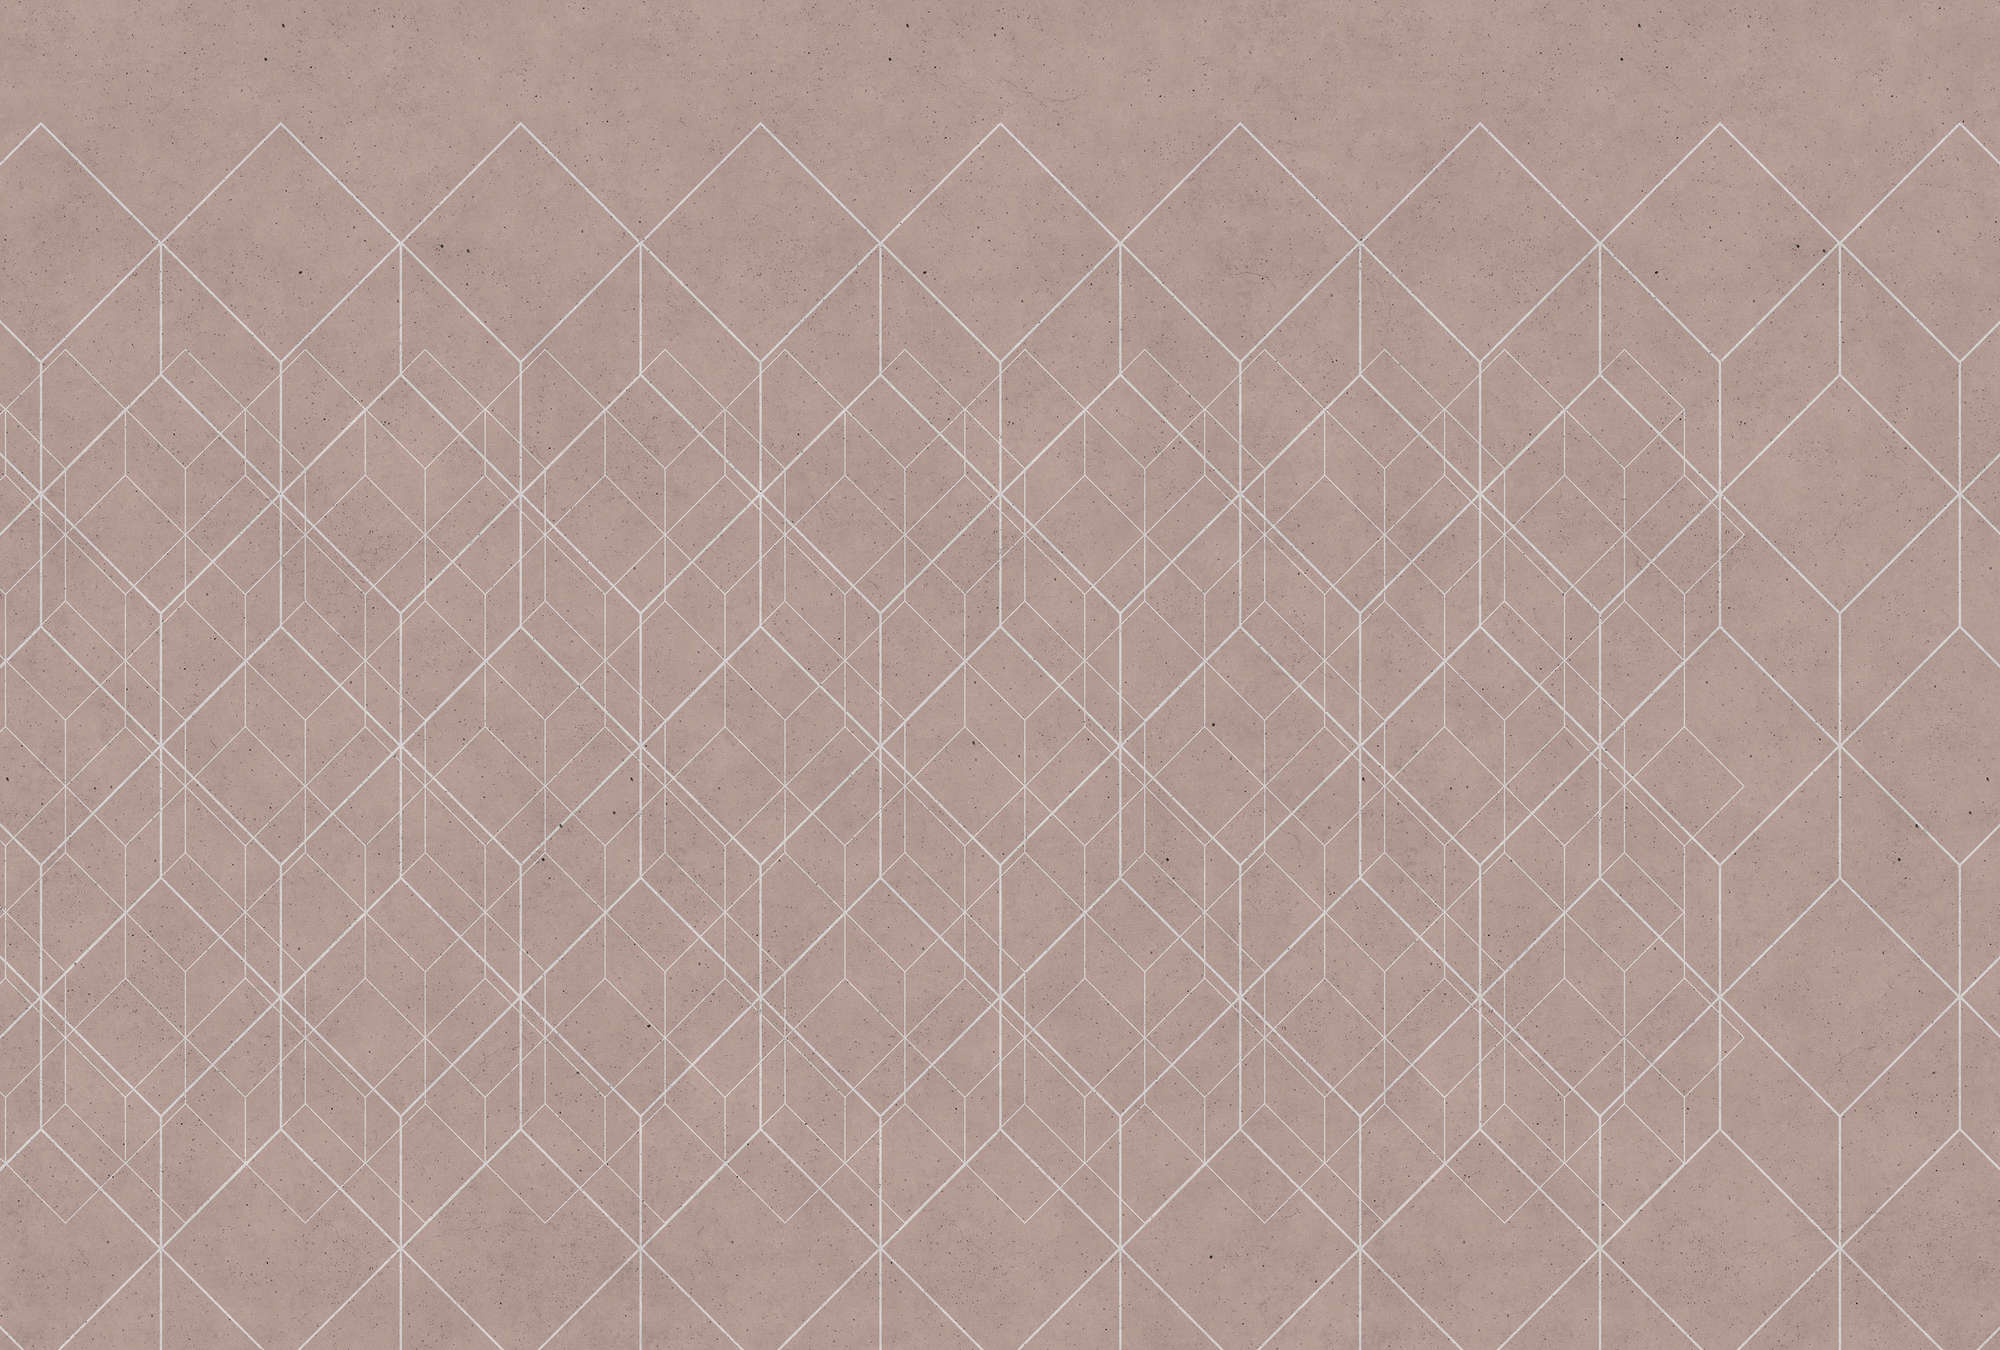             Papier peint motif géométrique - beige, blanc
        